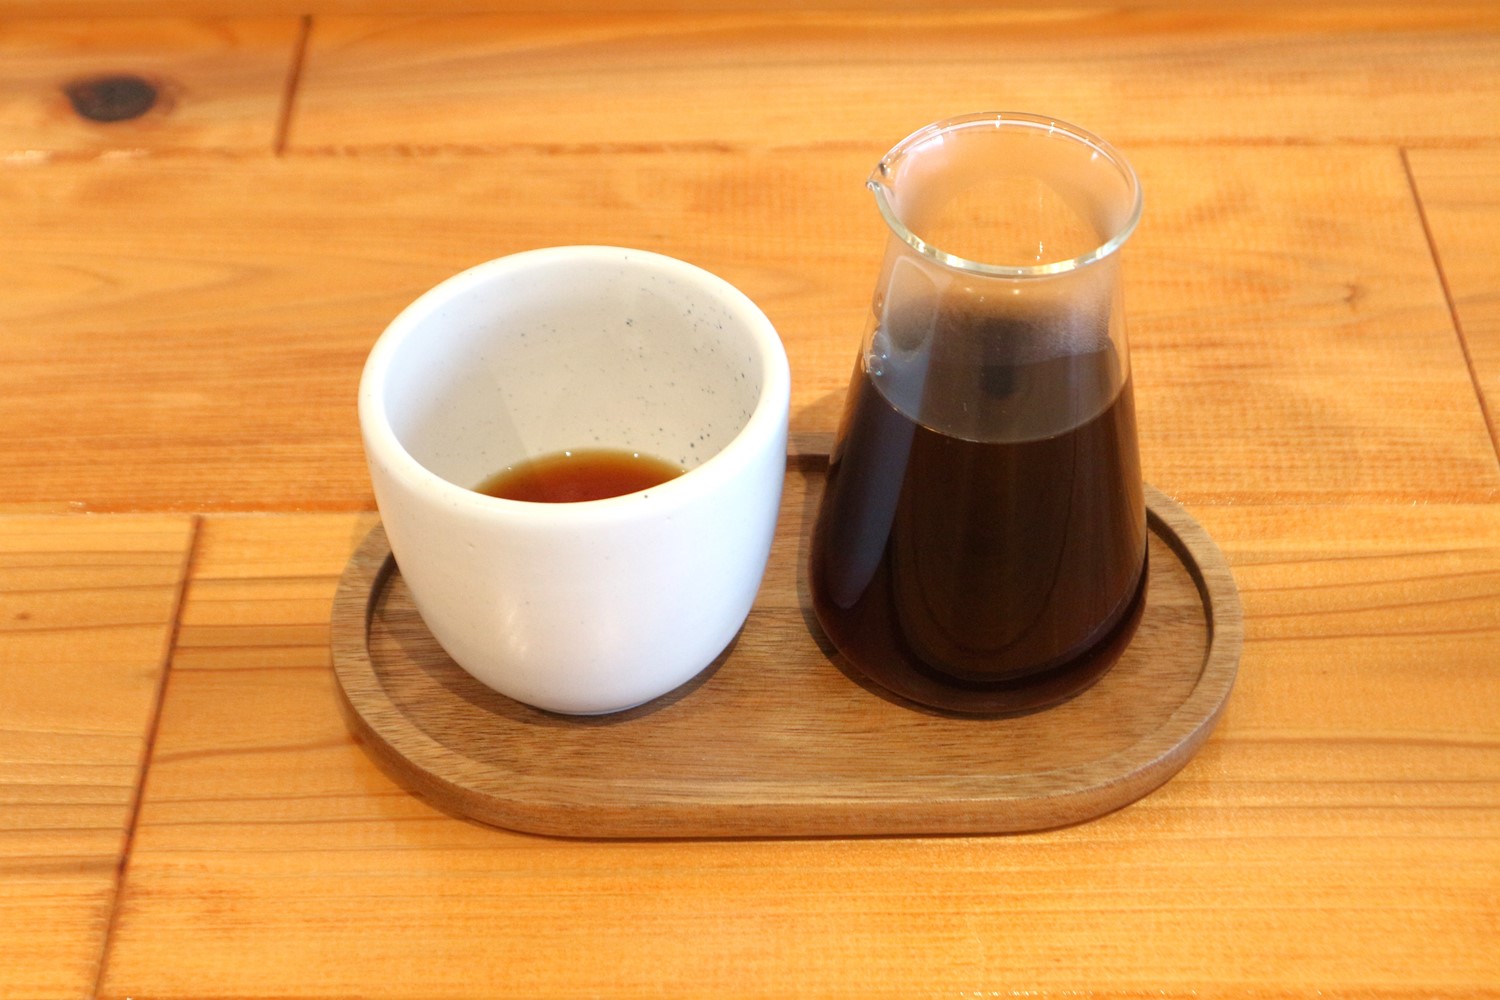 ブレンド600円は、立川の街のイメージをコーヒーで表現。